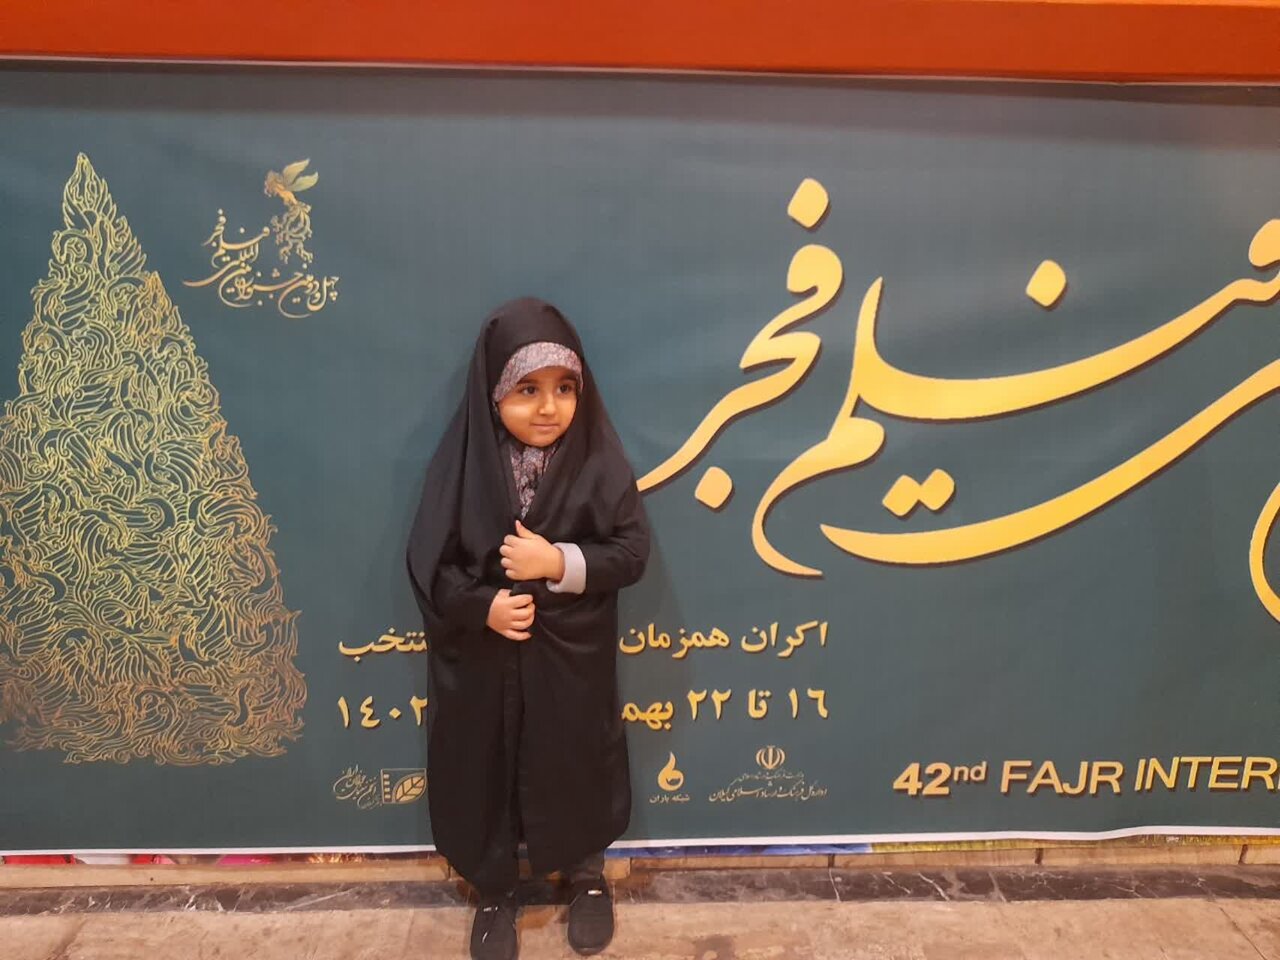 مروری بر ۷ روز اکران فیلم های جشنواره فجر در <a href='https://sayeb.ir/tag/%d8%b1%d8%b4%d8%aa'>رشت</a>